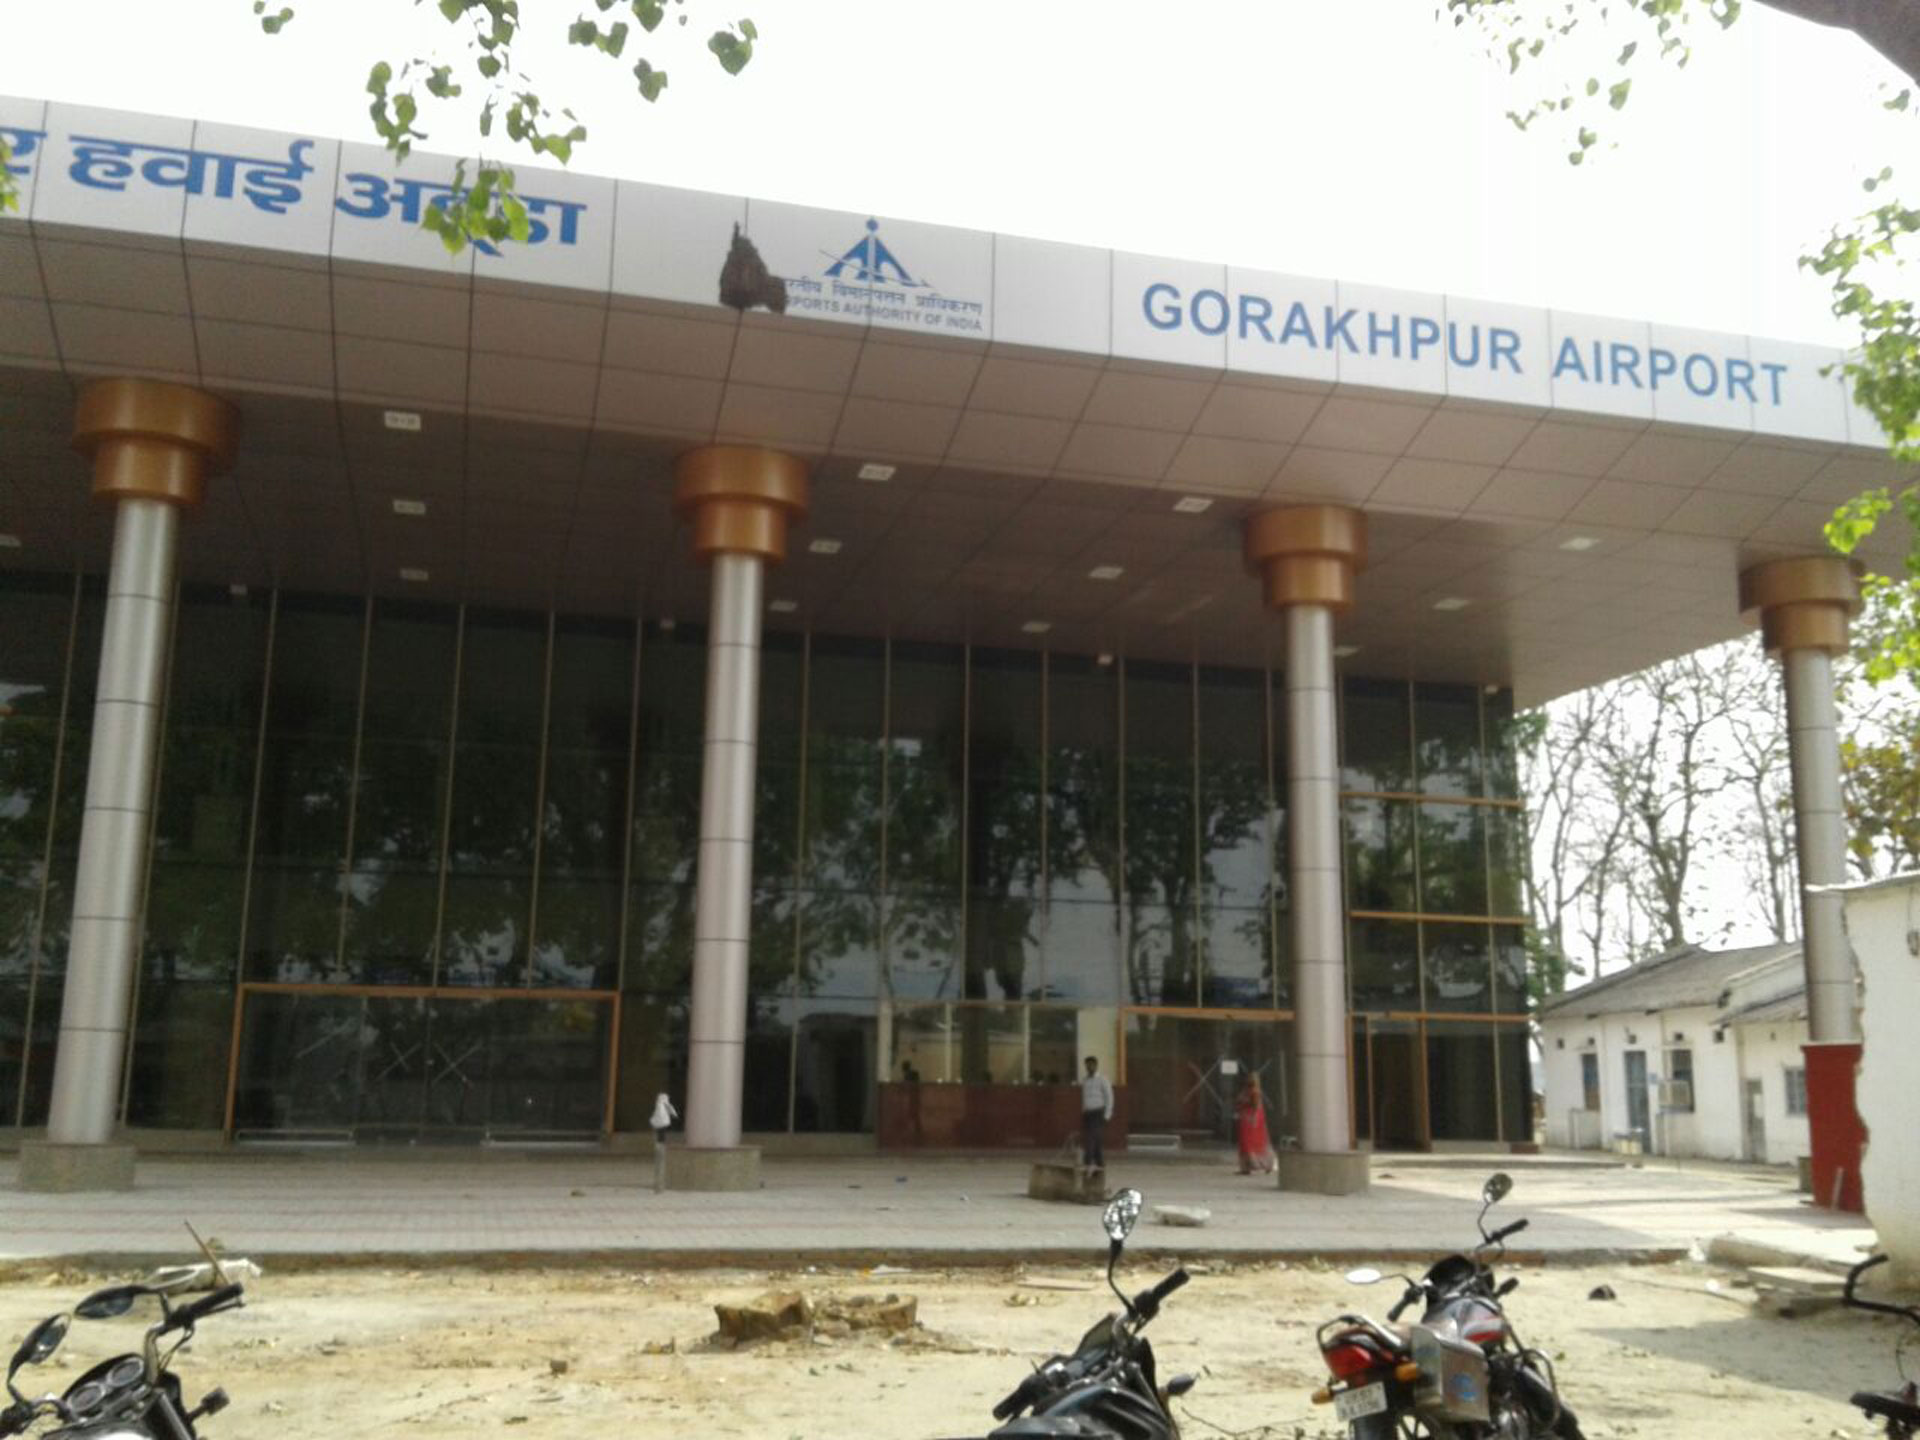 Gorakhpur Airport